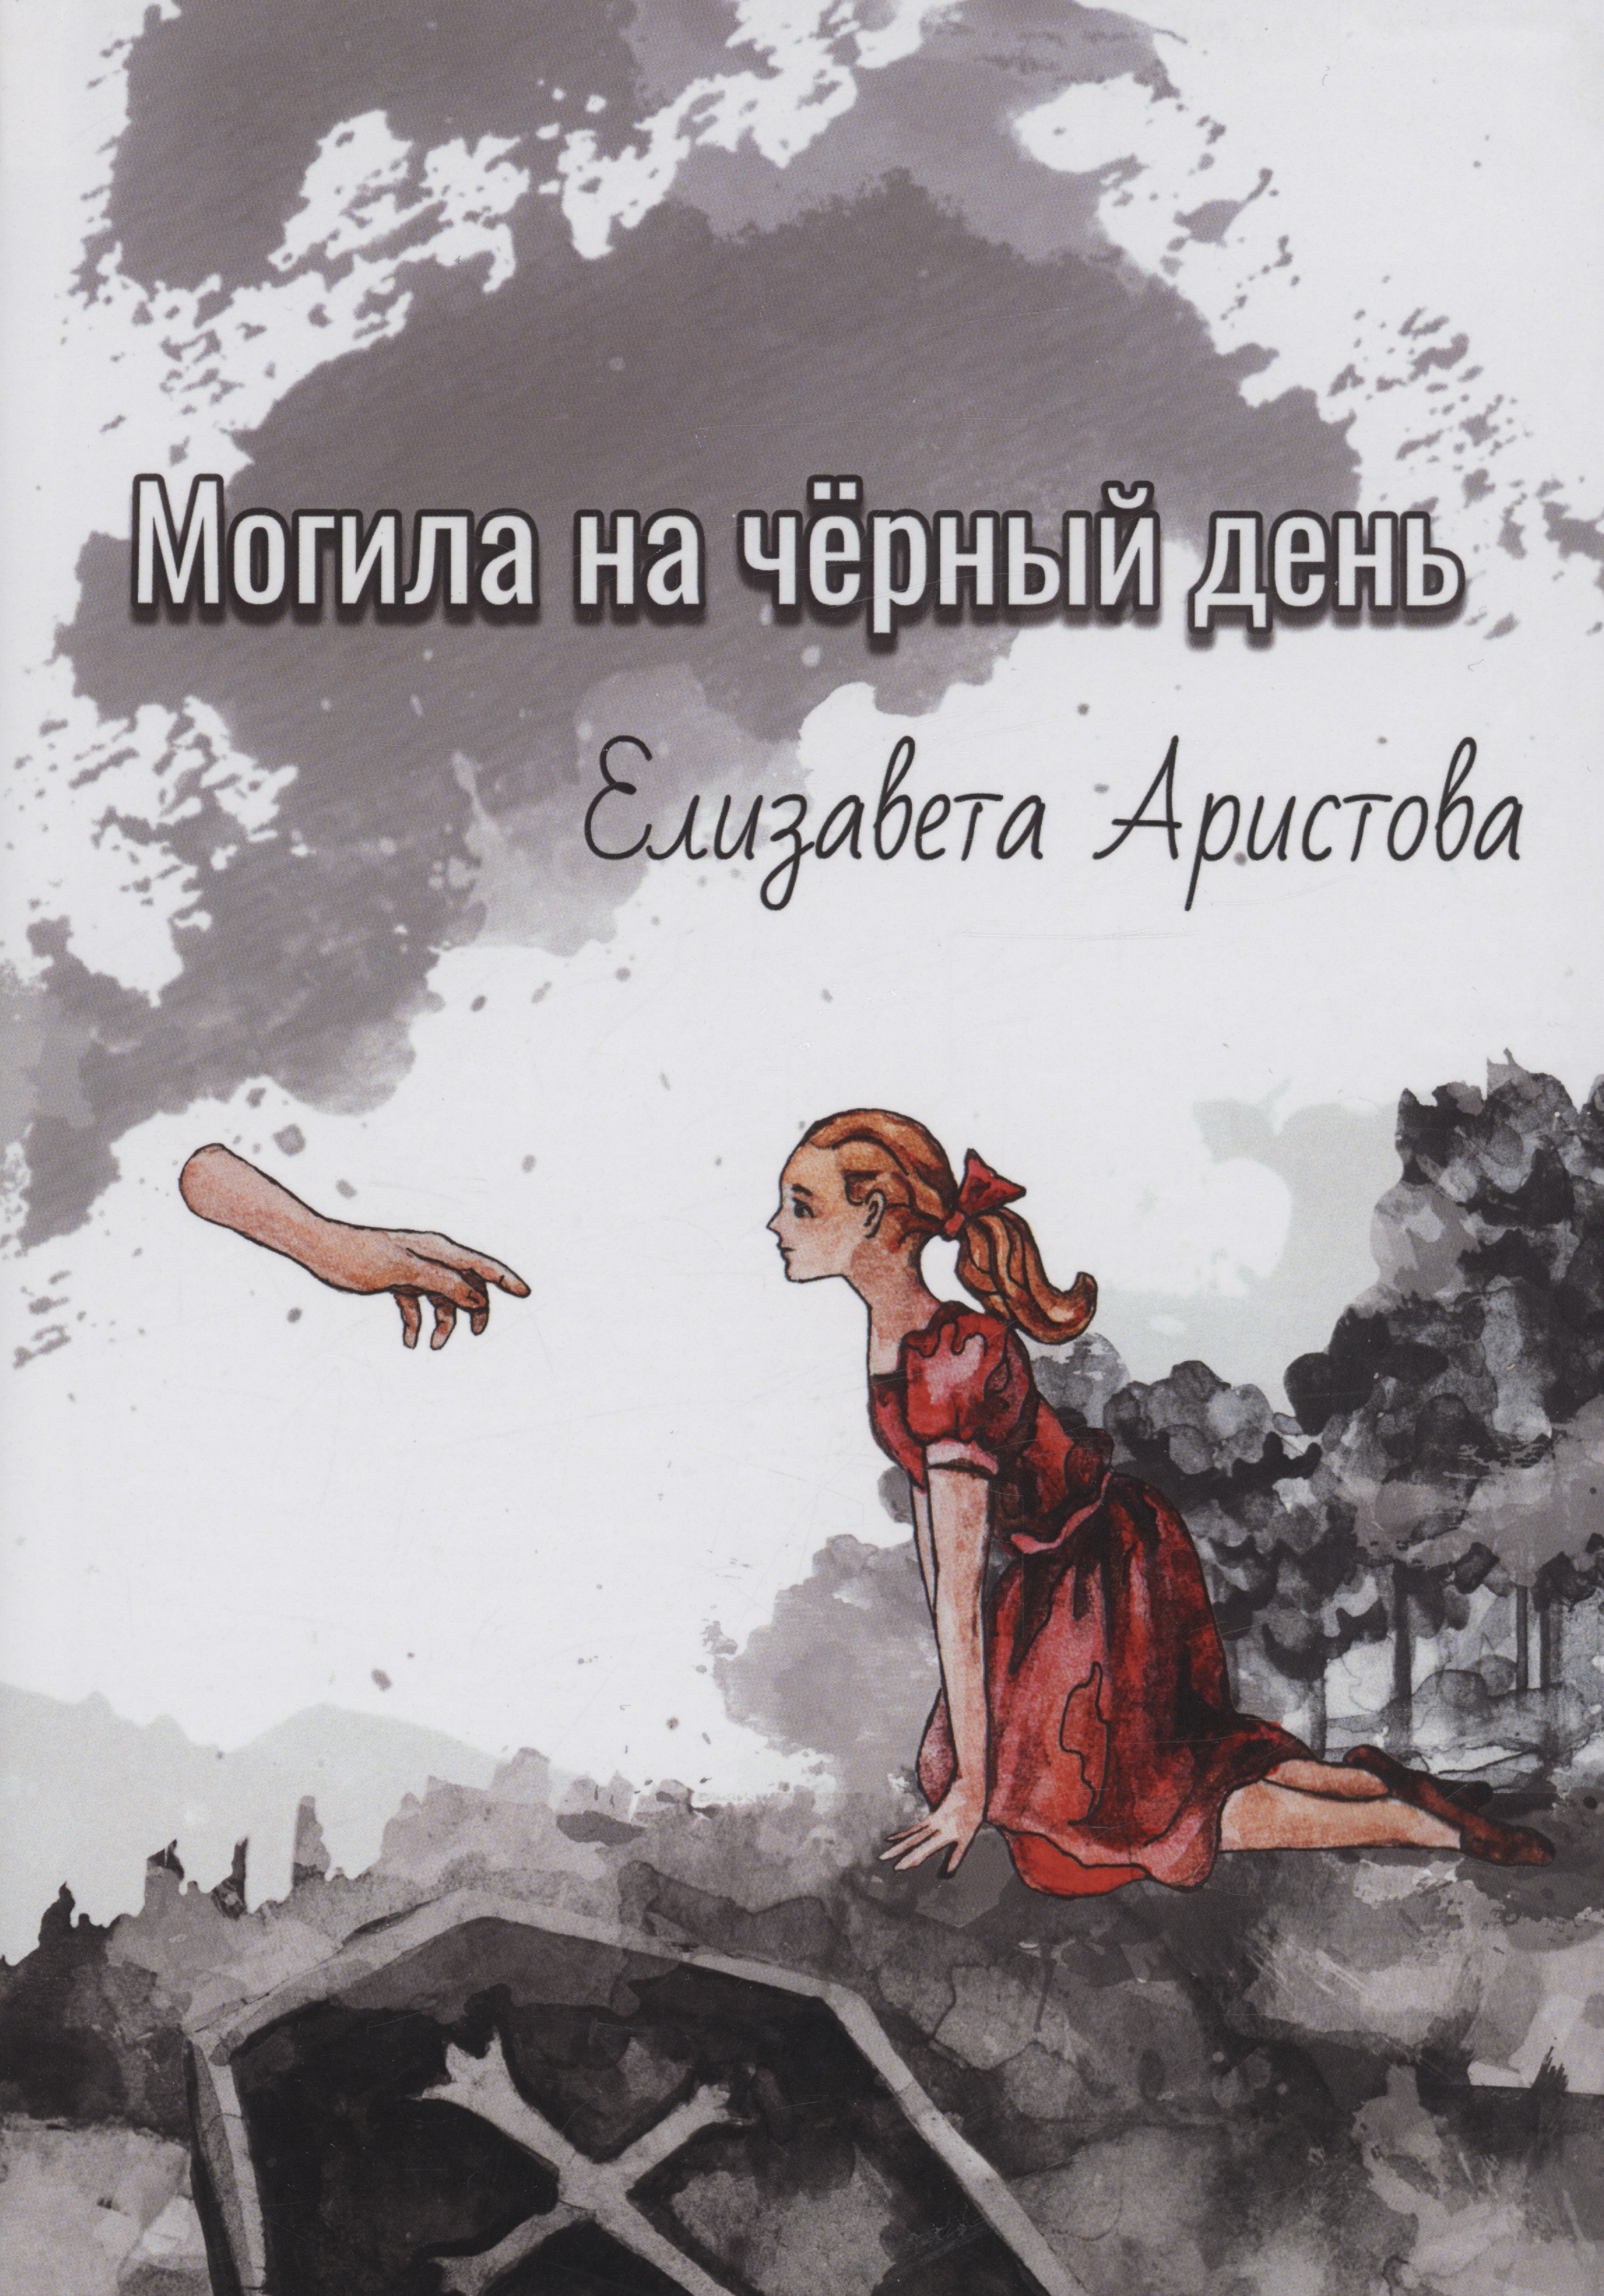 Аристова Елизавета Могила на чёрный день: сборник рассказов